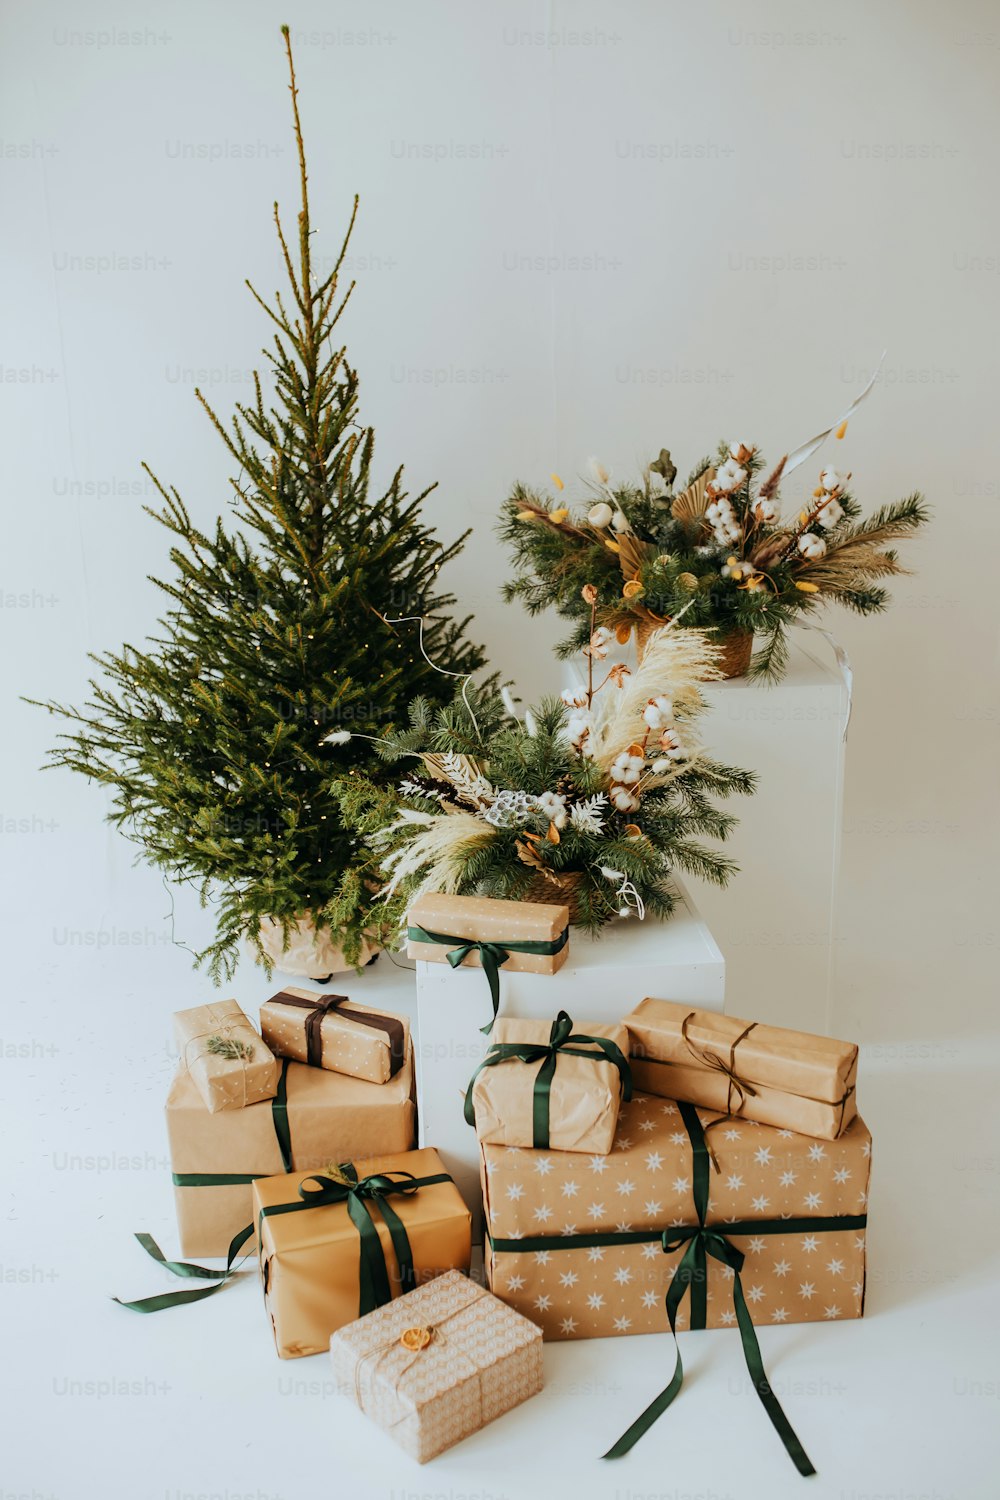 Un groupe de cadeaux emballés assis à côté d’un arbre de Noël